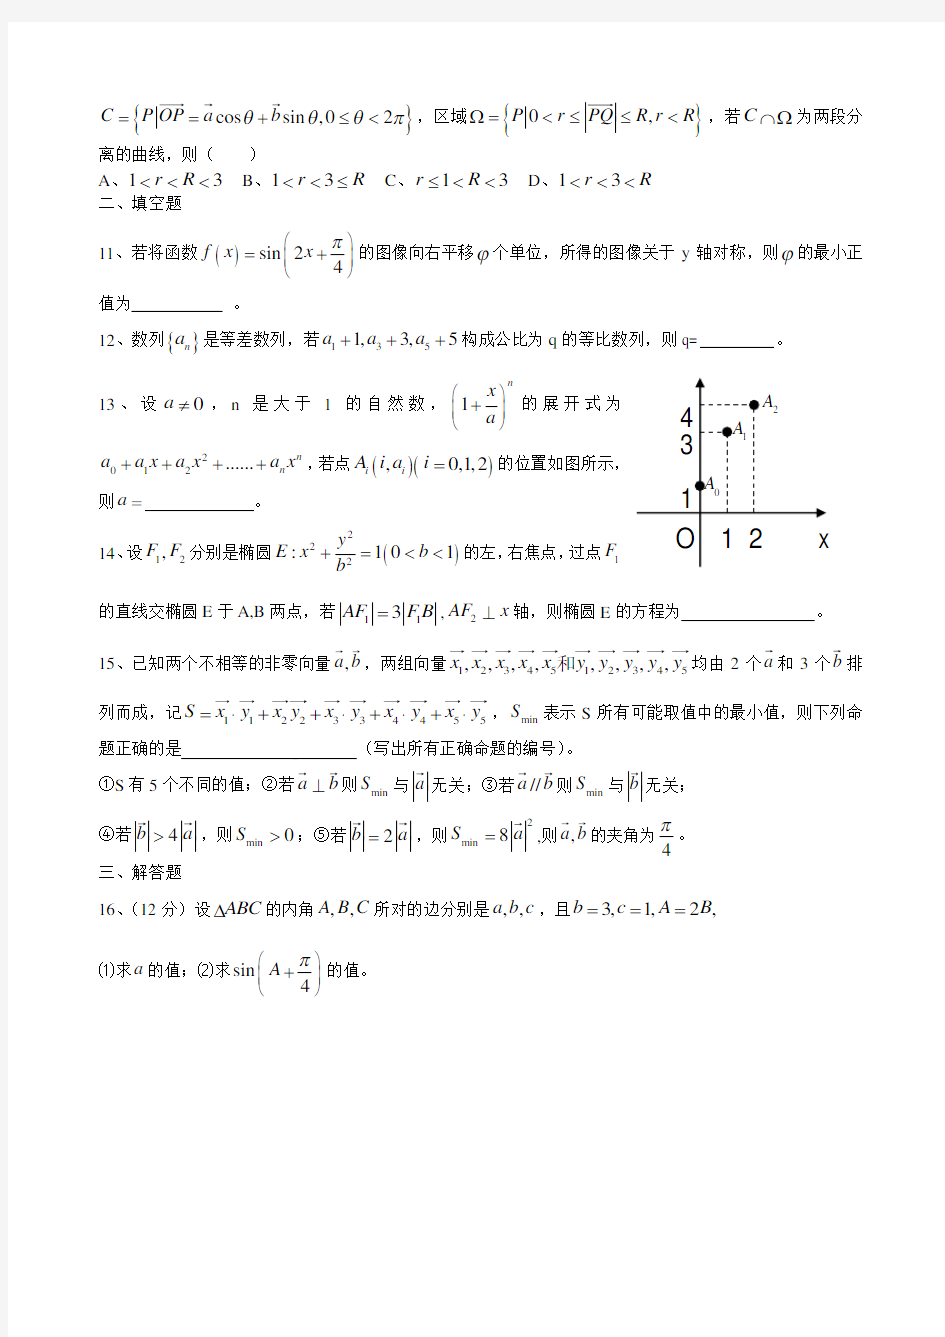 2014年安徽高考数学试卷(理科)